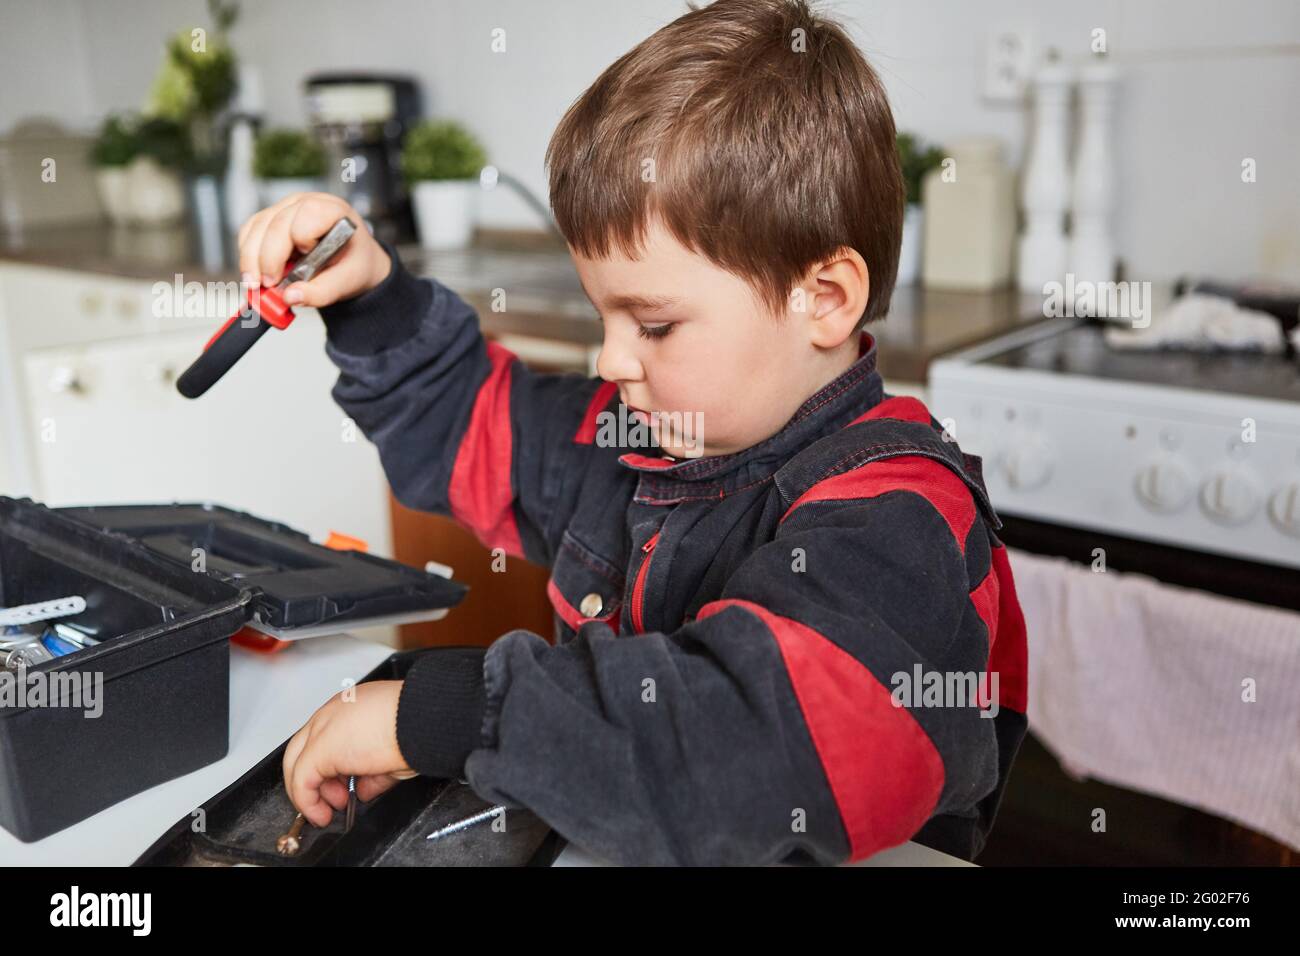 El niño juega a artesano o fontanero y tidies encima de la caja de herramientas Foto de stock